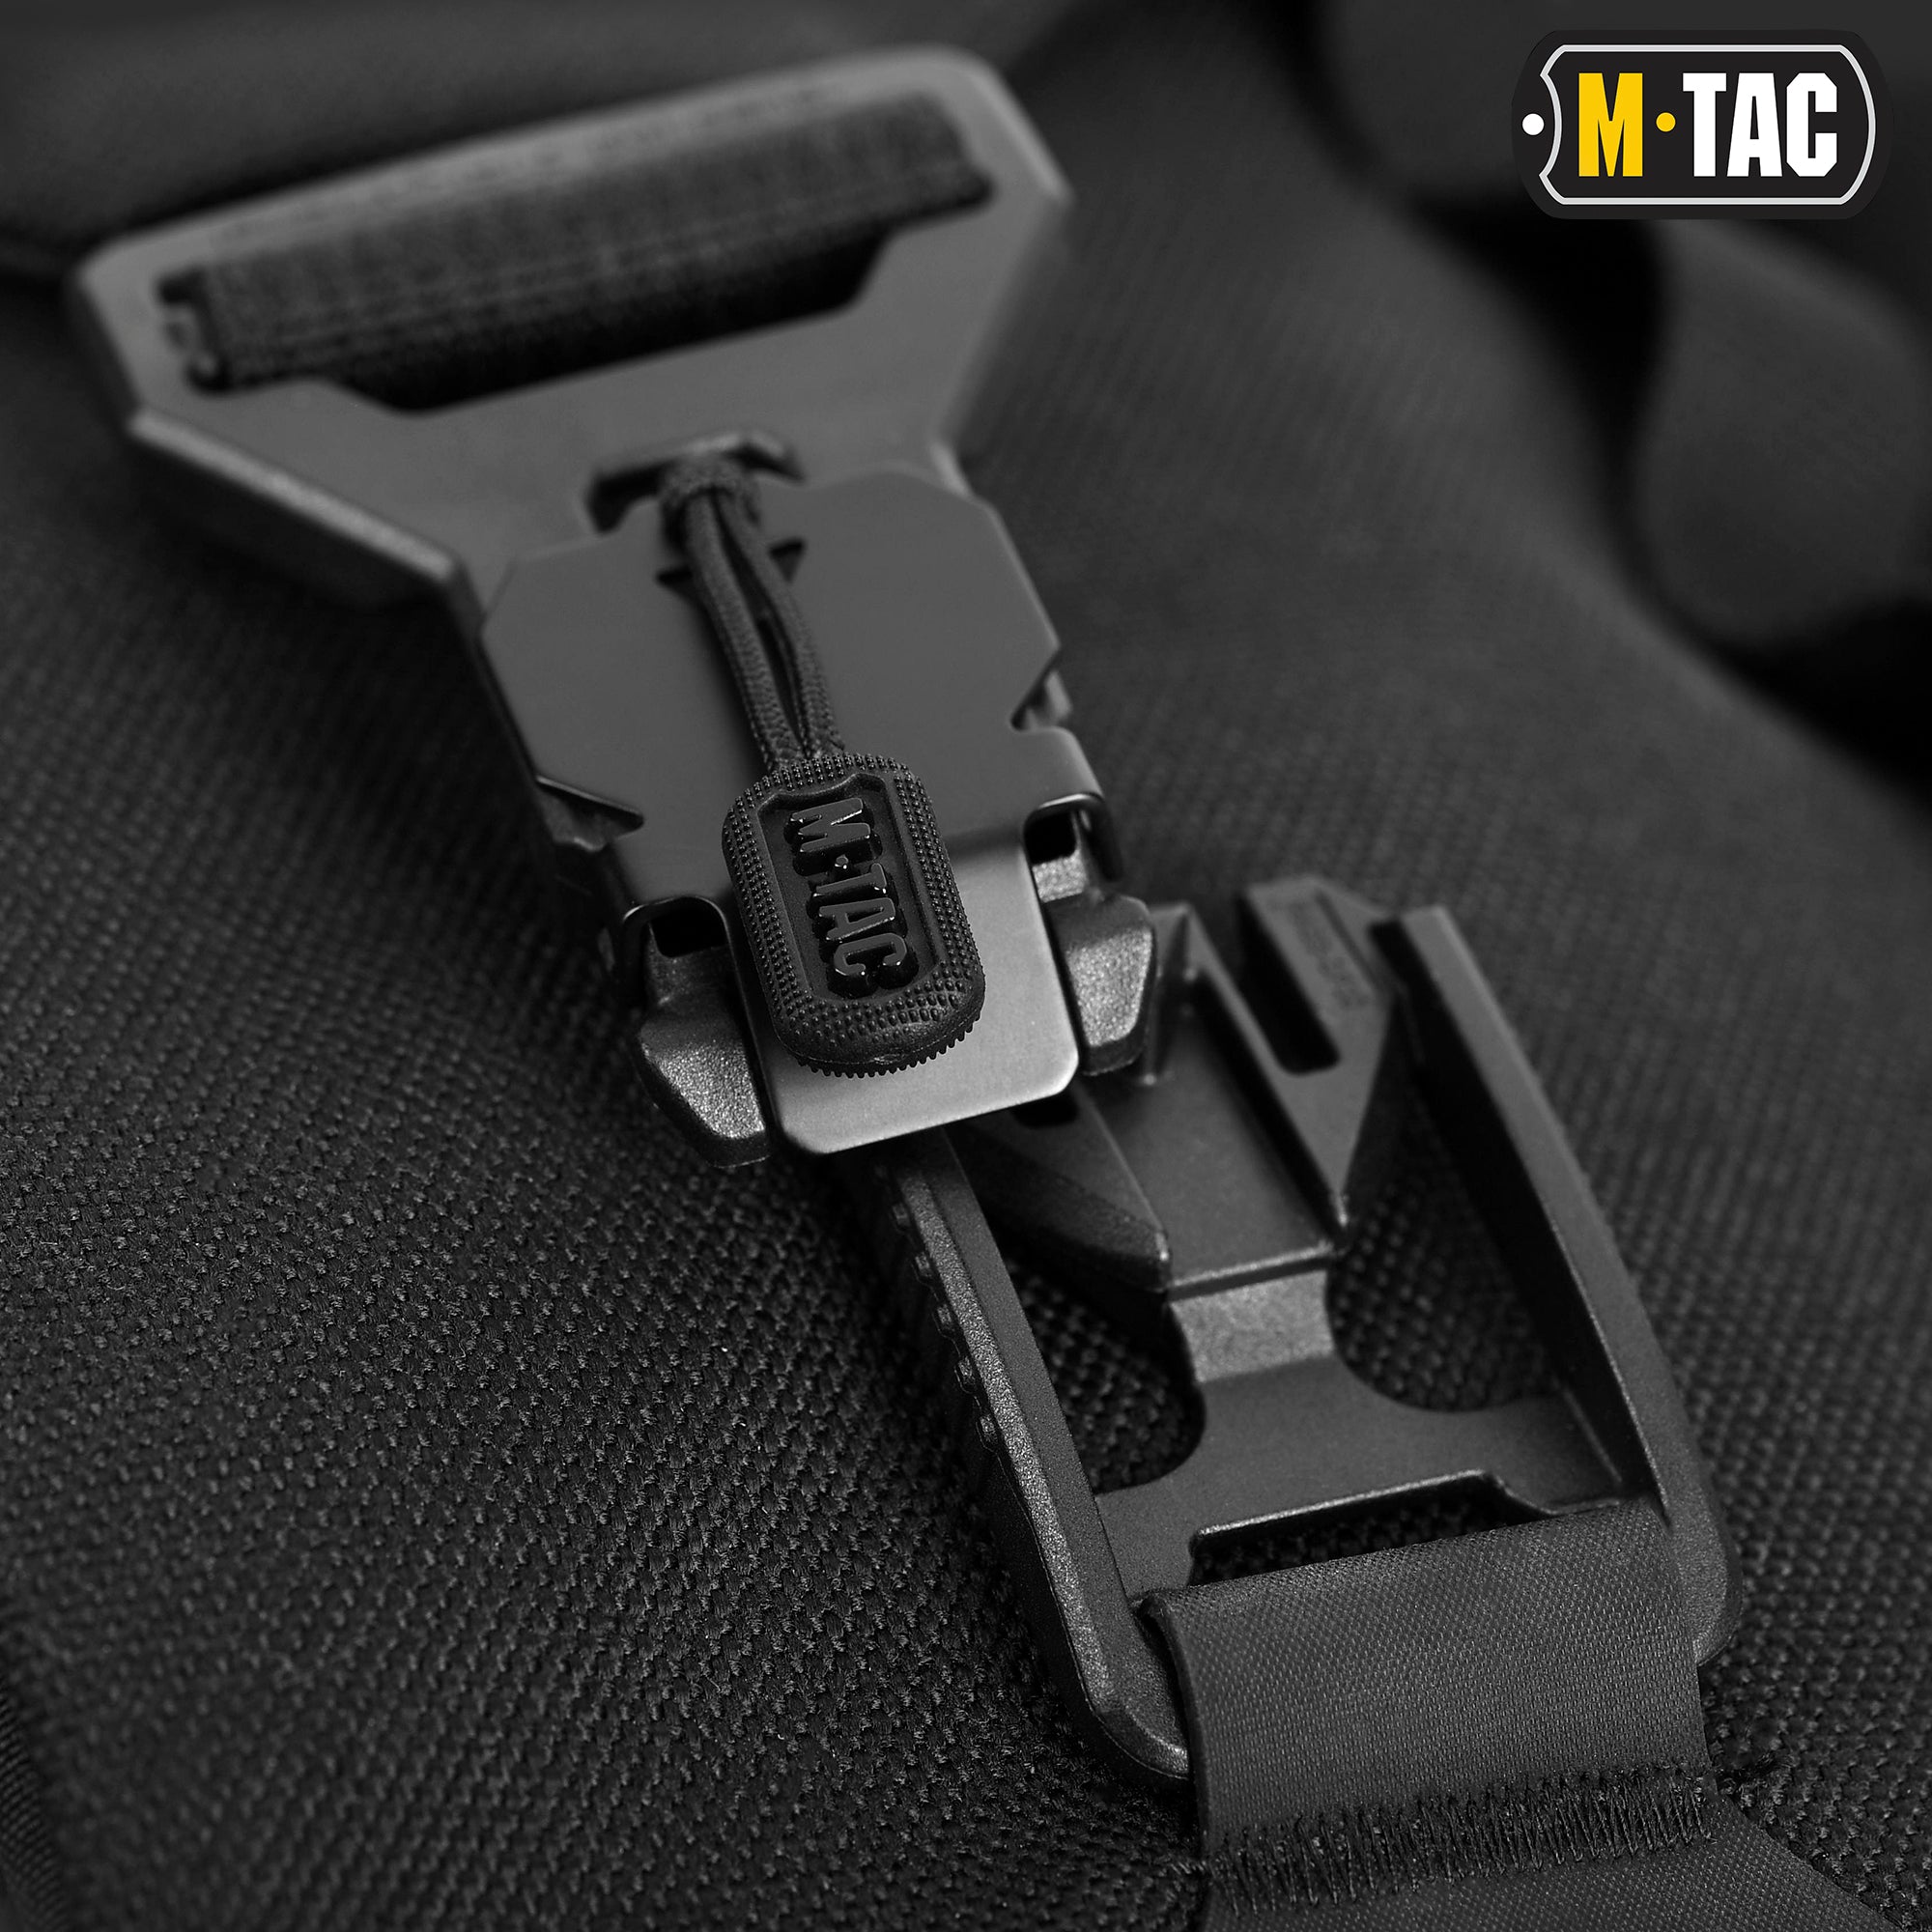 M-Tac Magnet Bag – M-TAC